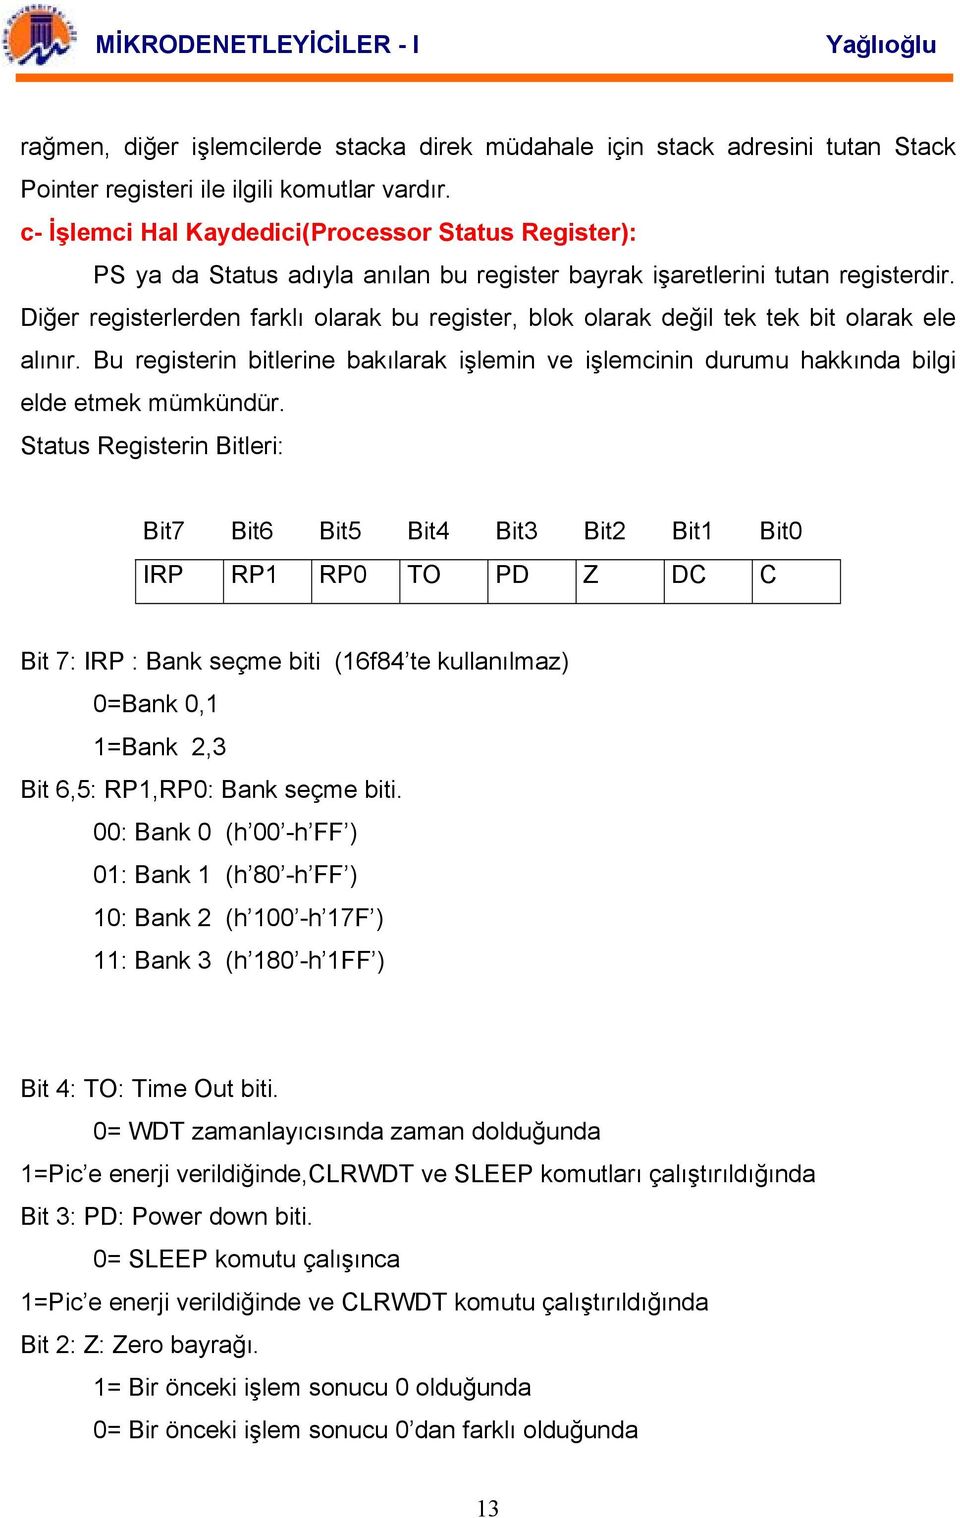 Diğer registerlerden farklı olarak bu register, blok olarak değil tek tek bit olarak ele alınır. Bu registerin bitlerine bakılarak işlemin ve işlemcinin durumu hakkında bilgi elde etmek mümkündür.